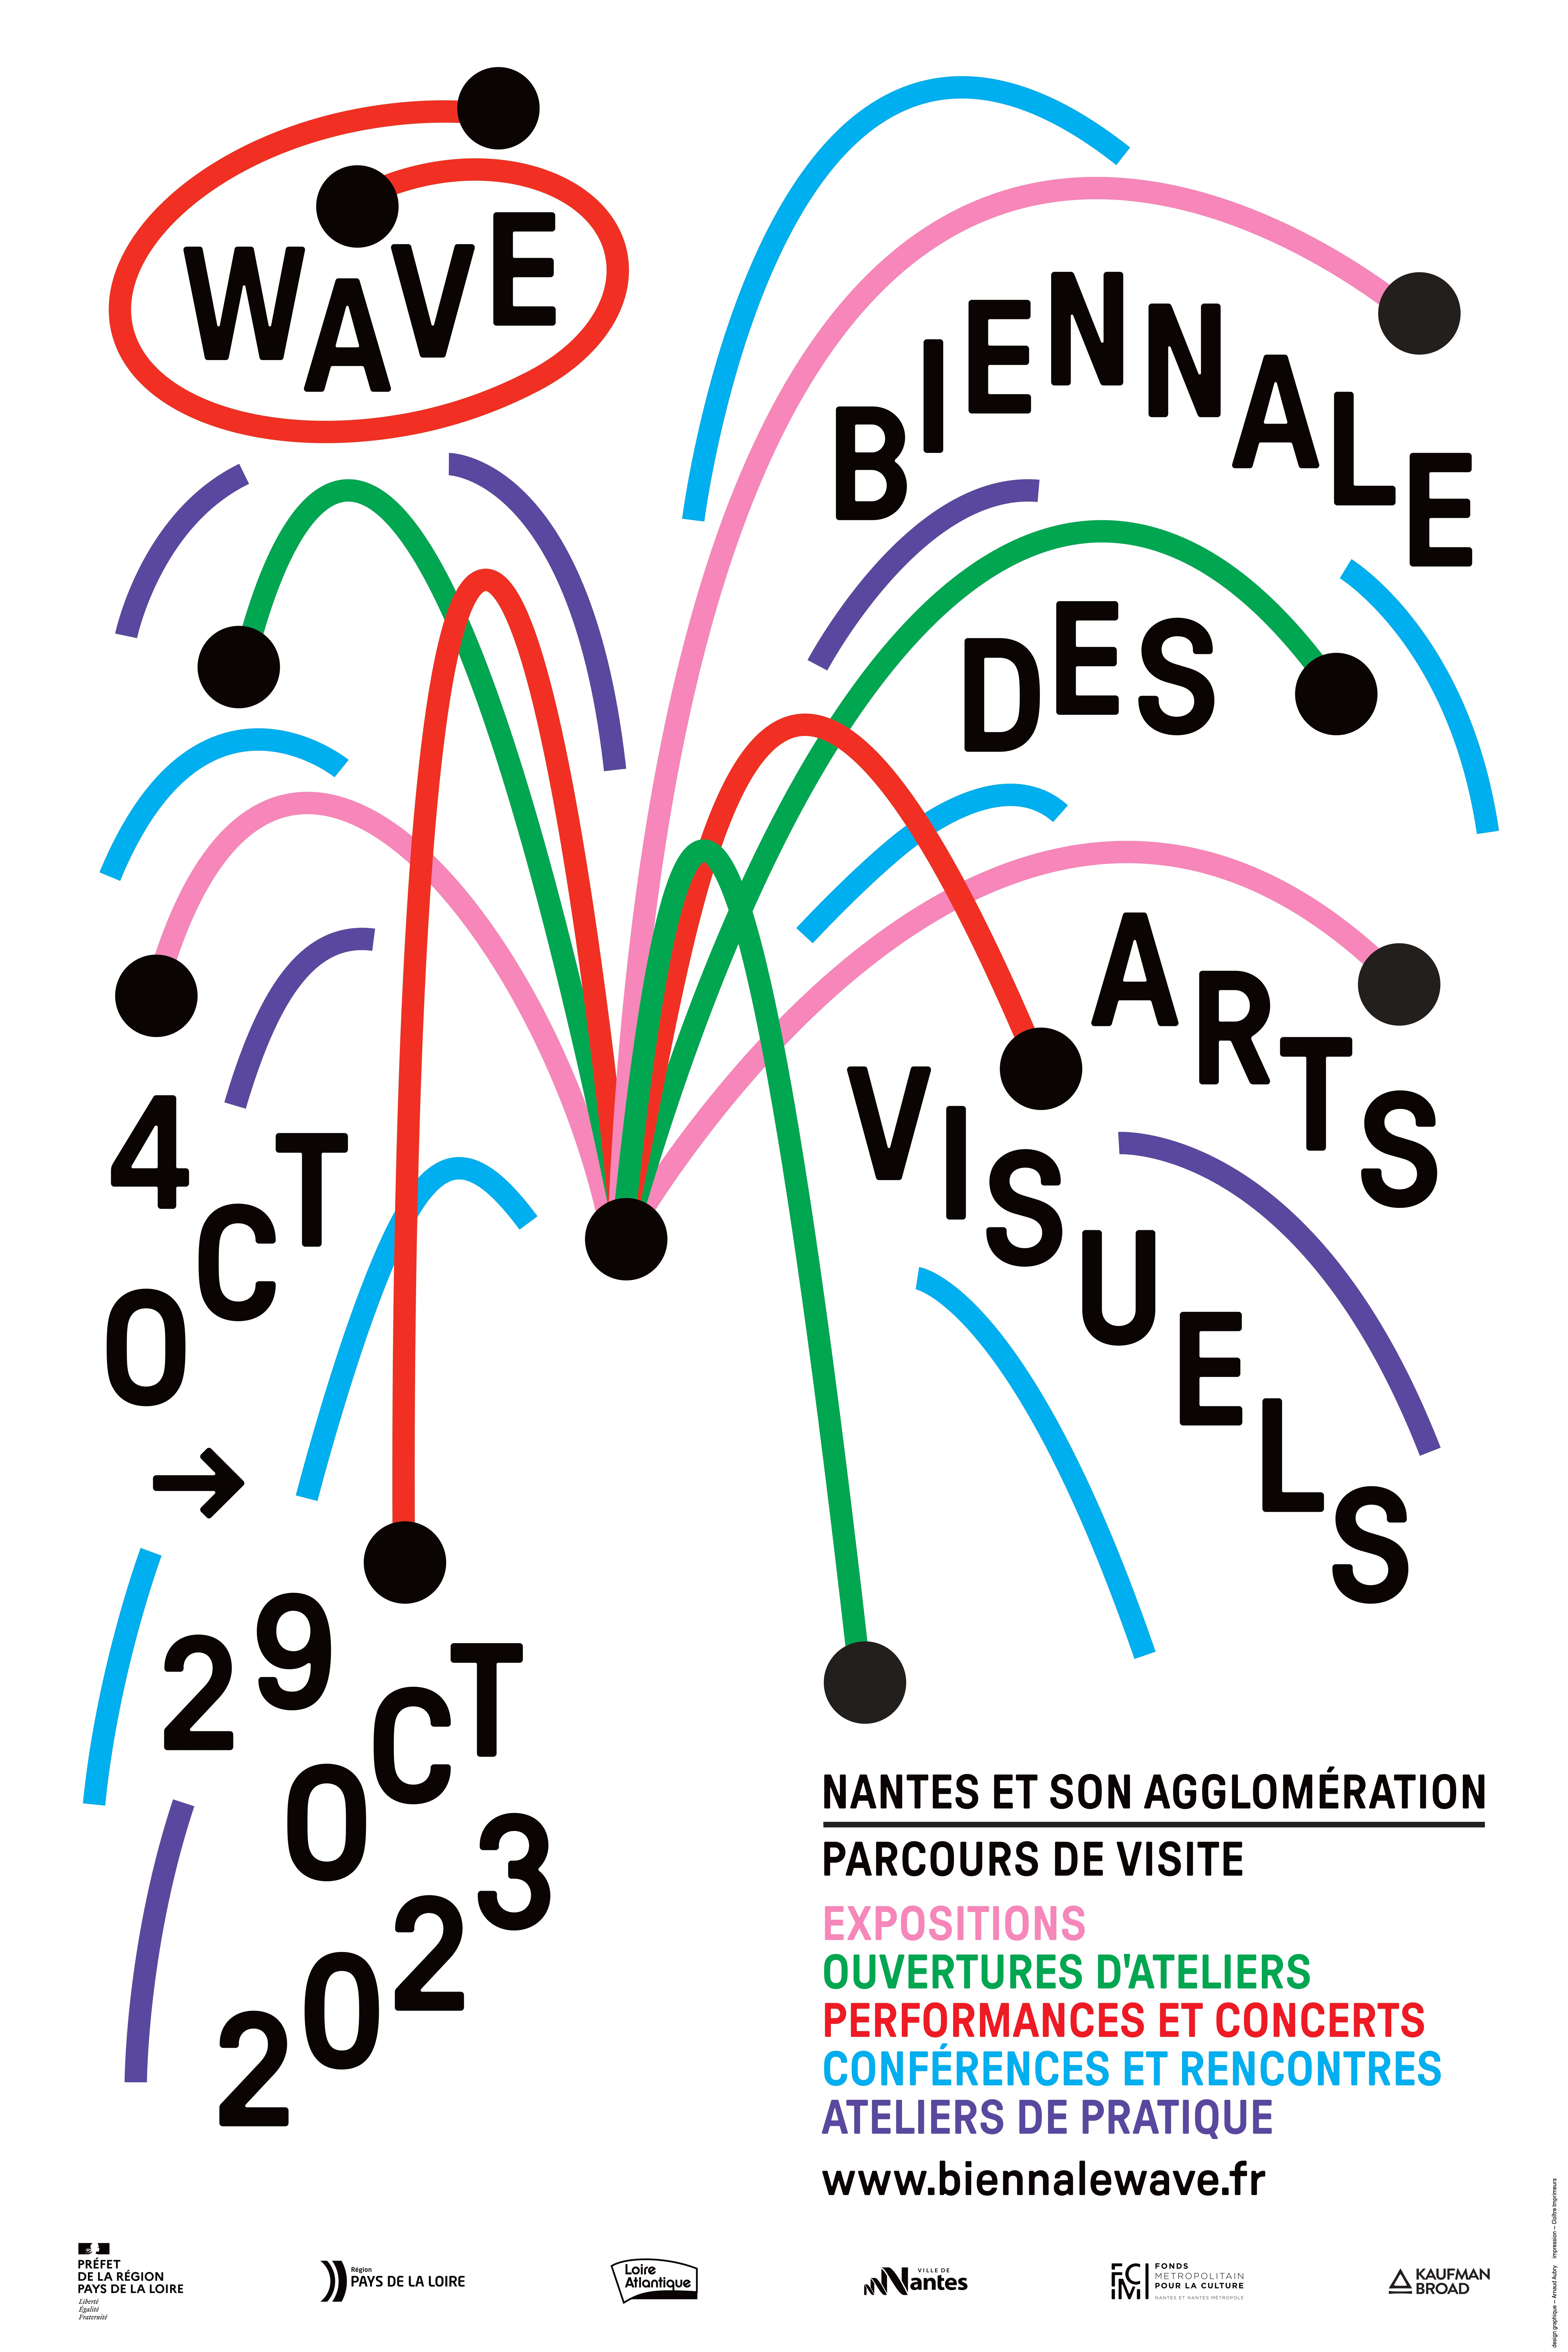 Wave – Biennale des arts visuels